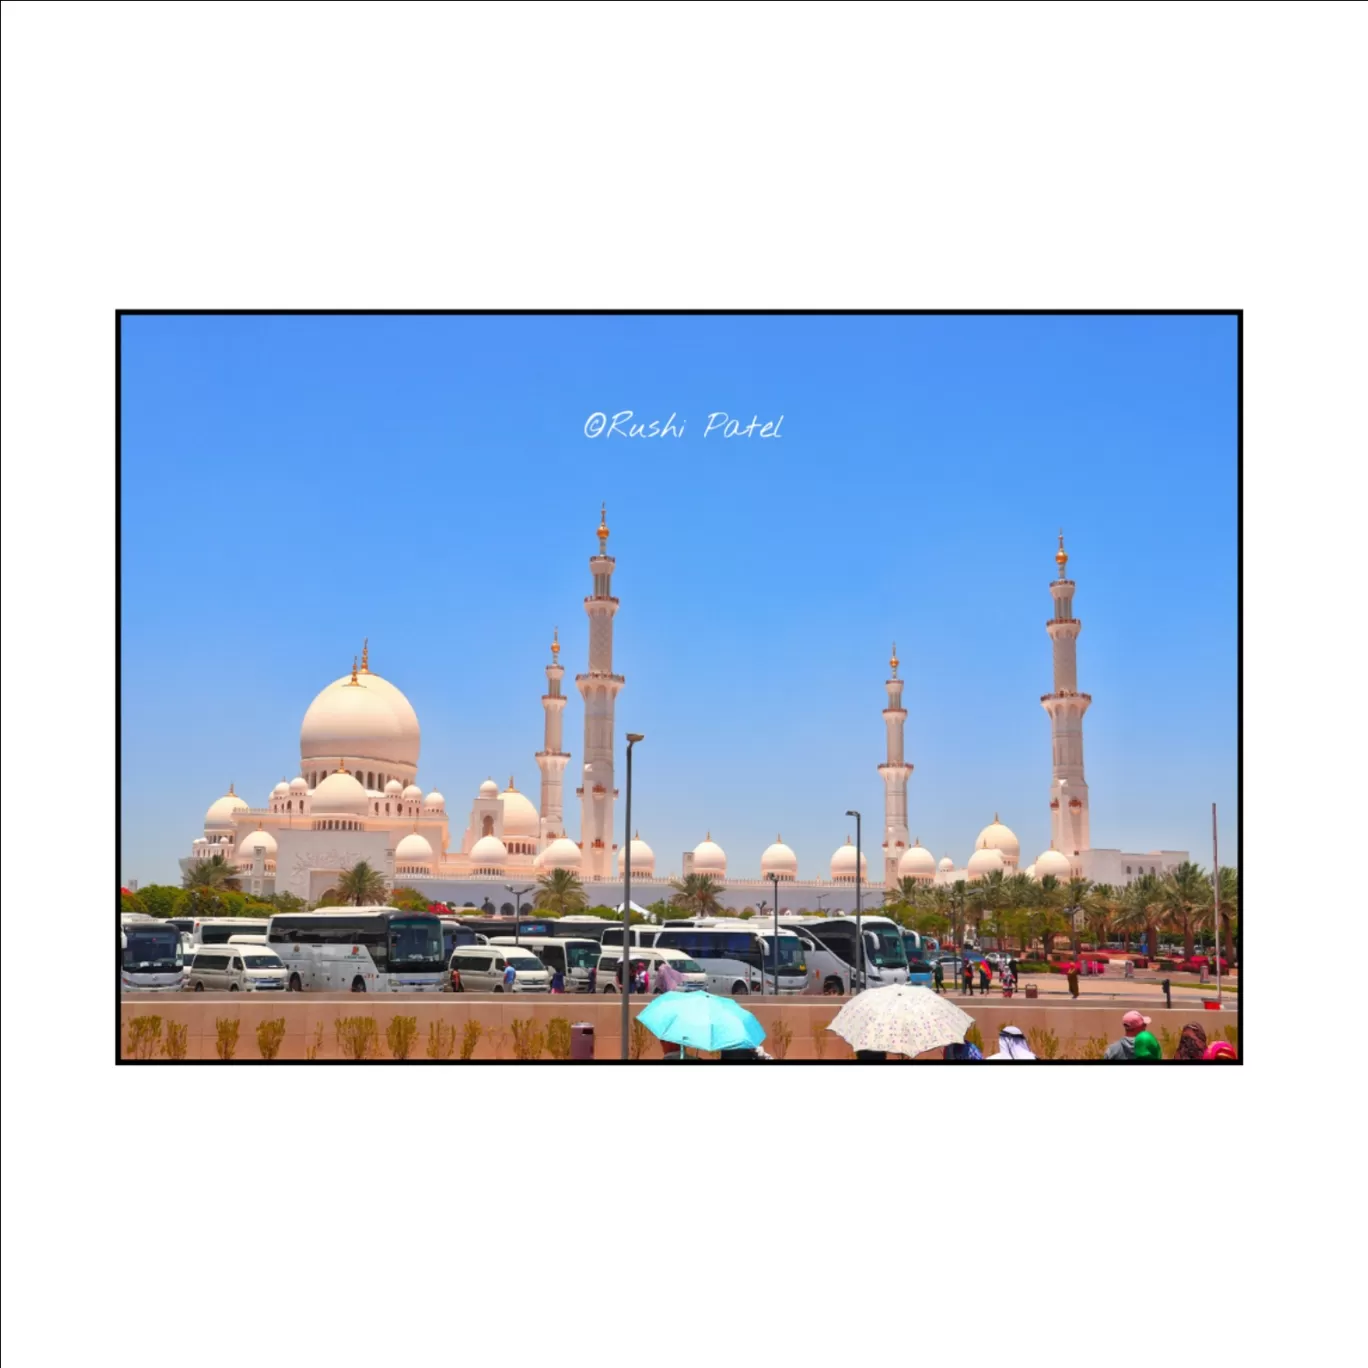 Photo of Grand Mosque - Abu Dhabi - United Arab Emirates By Rushi Patel